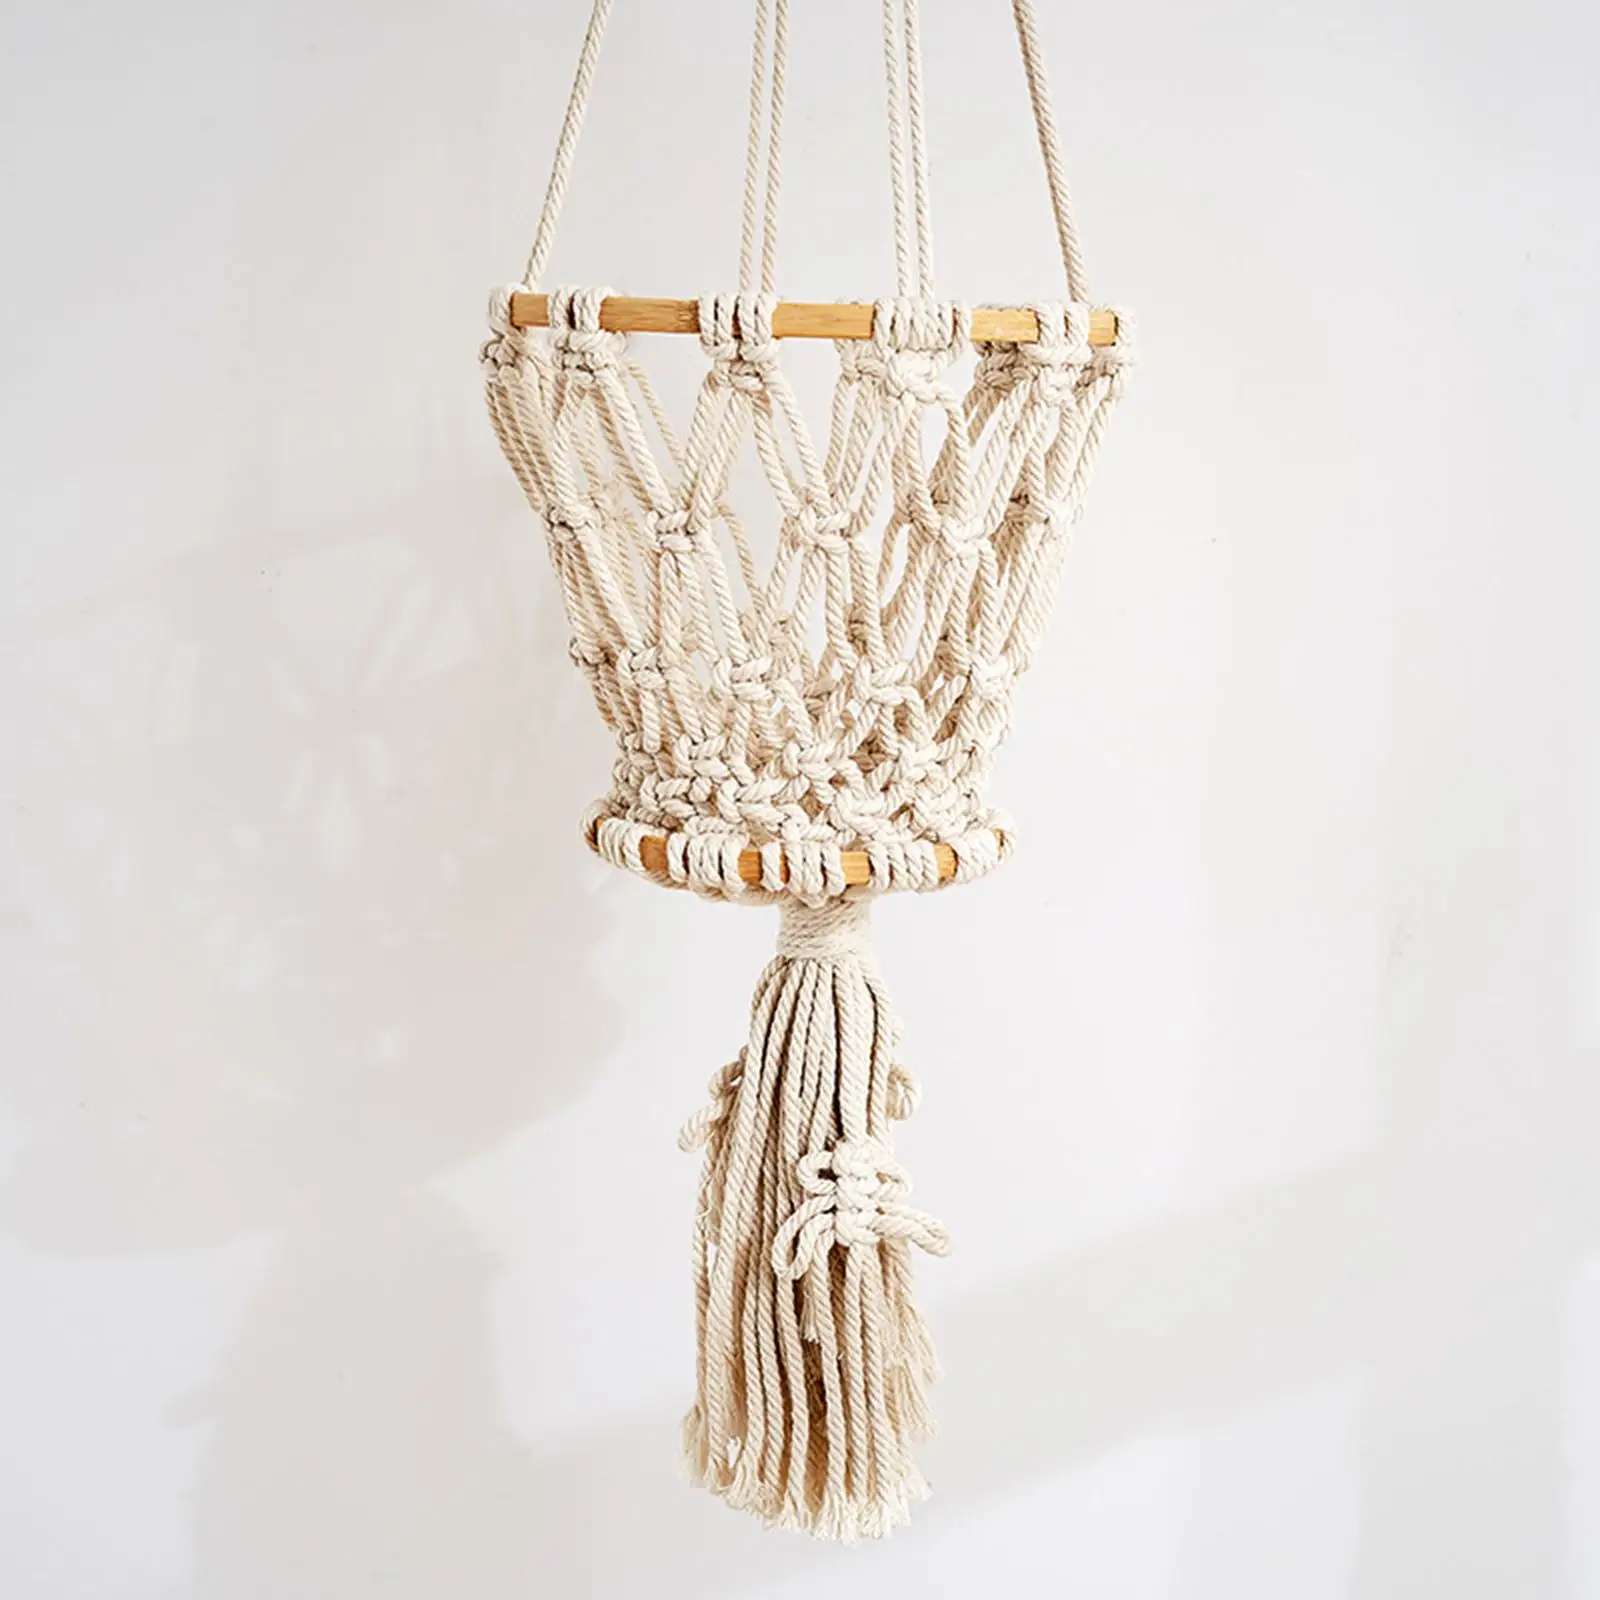 Hanging Basket Storage Basket Hanging Hooks Pot for Dining Room Outdoor Ceiling Office Indoor